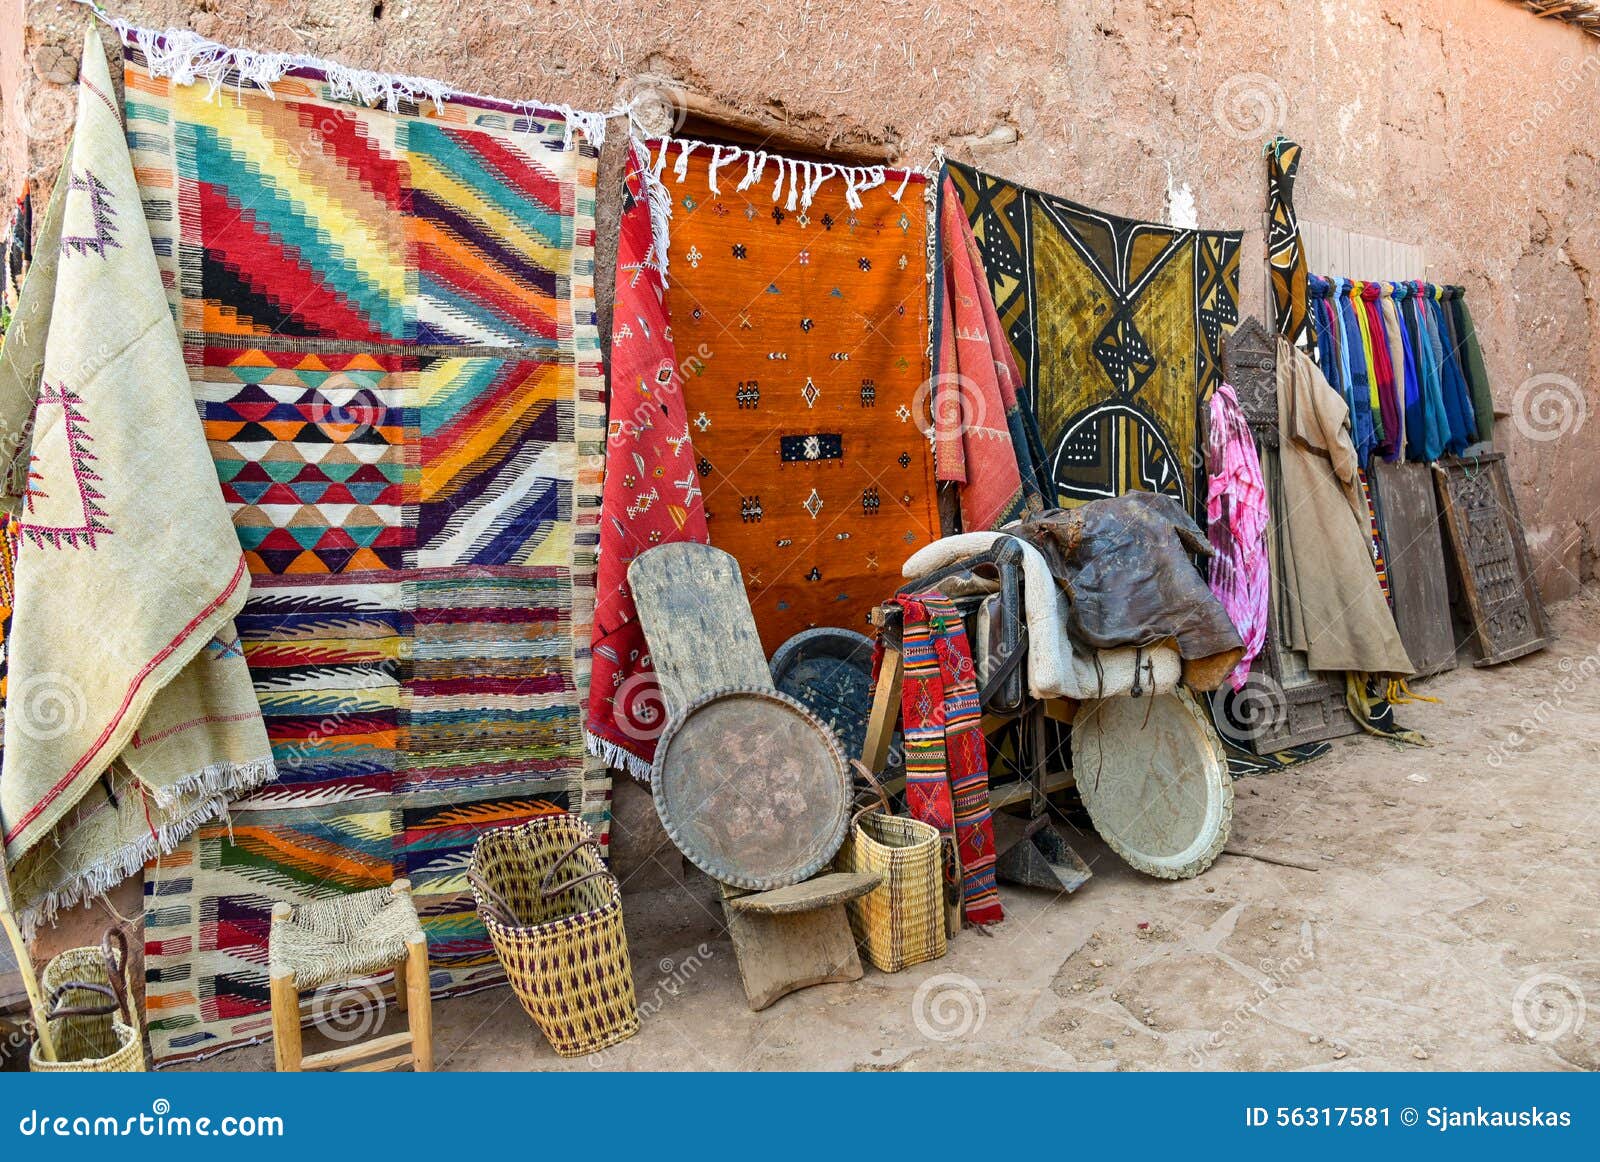 Marokkaanse Tapijten En Herinneringen Afbeelding Image of arabisch, kleurrijk: